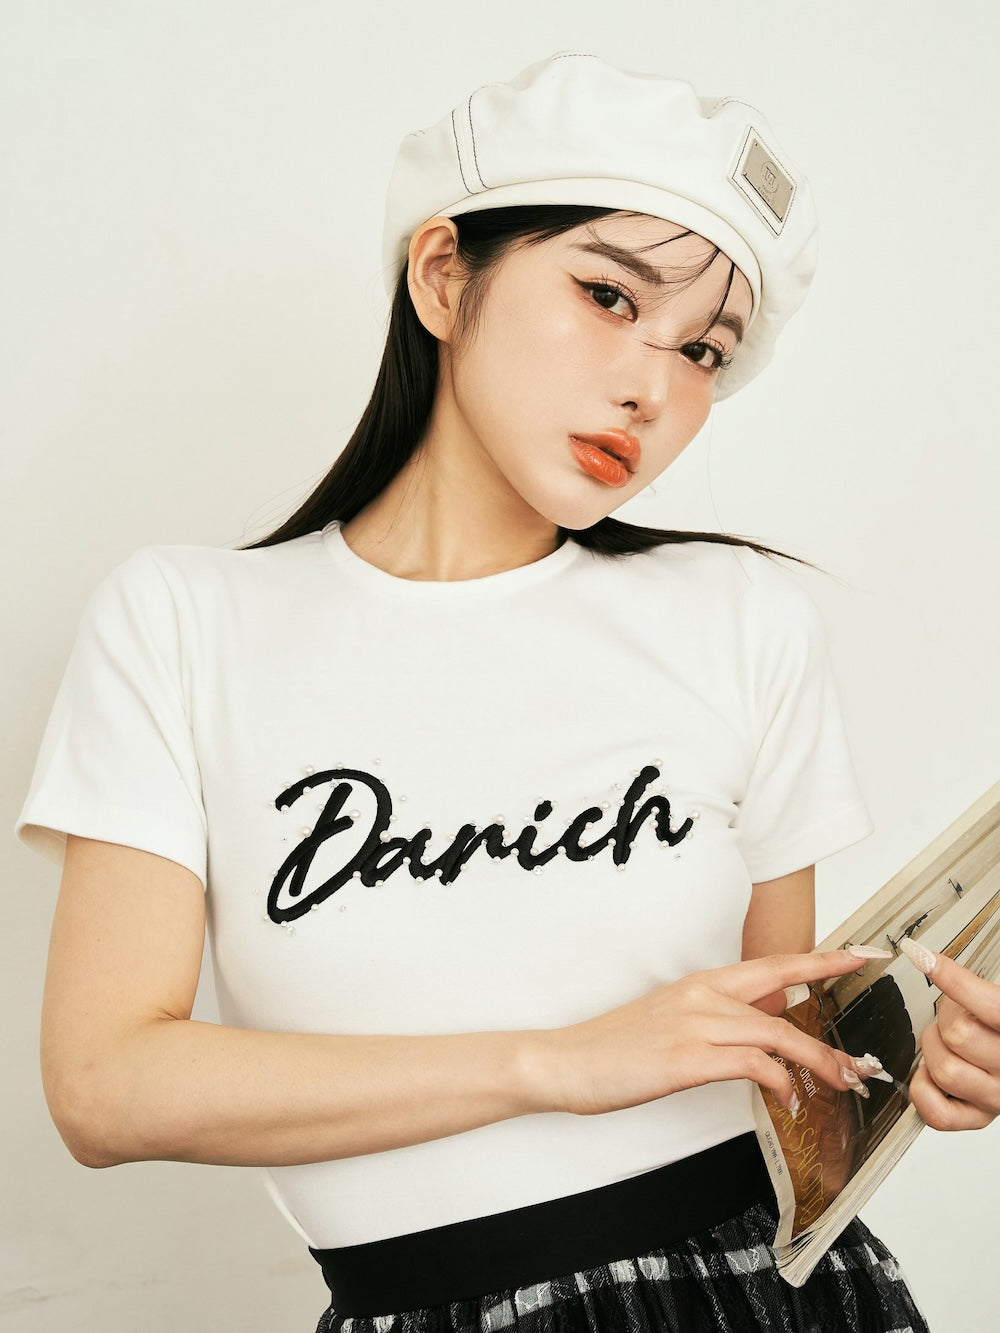 予約商品】エンブロイダリーパールTシャツ – Darich (ダーリッチ)